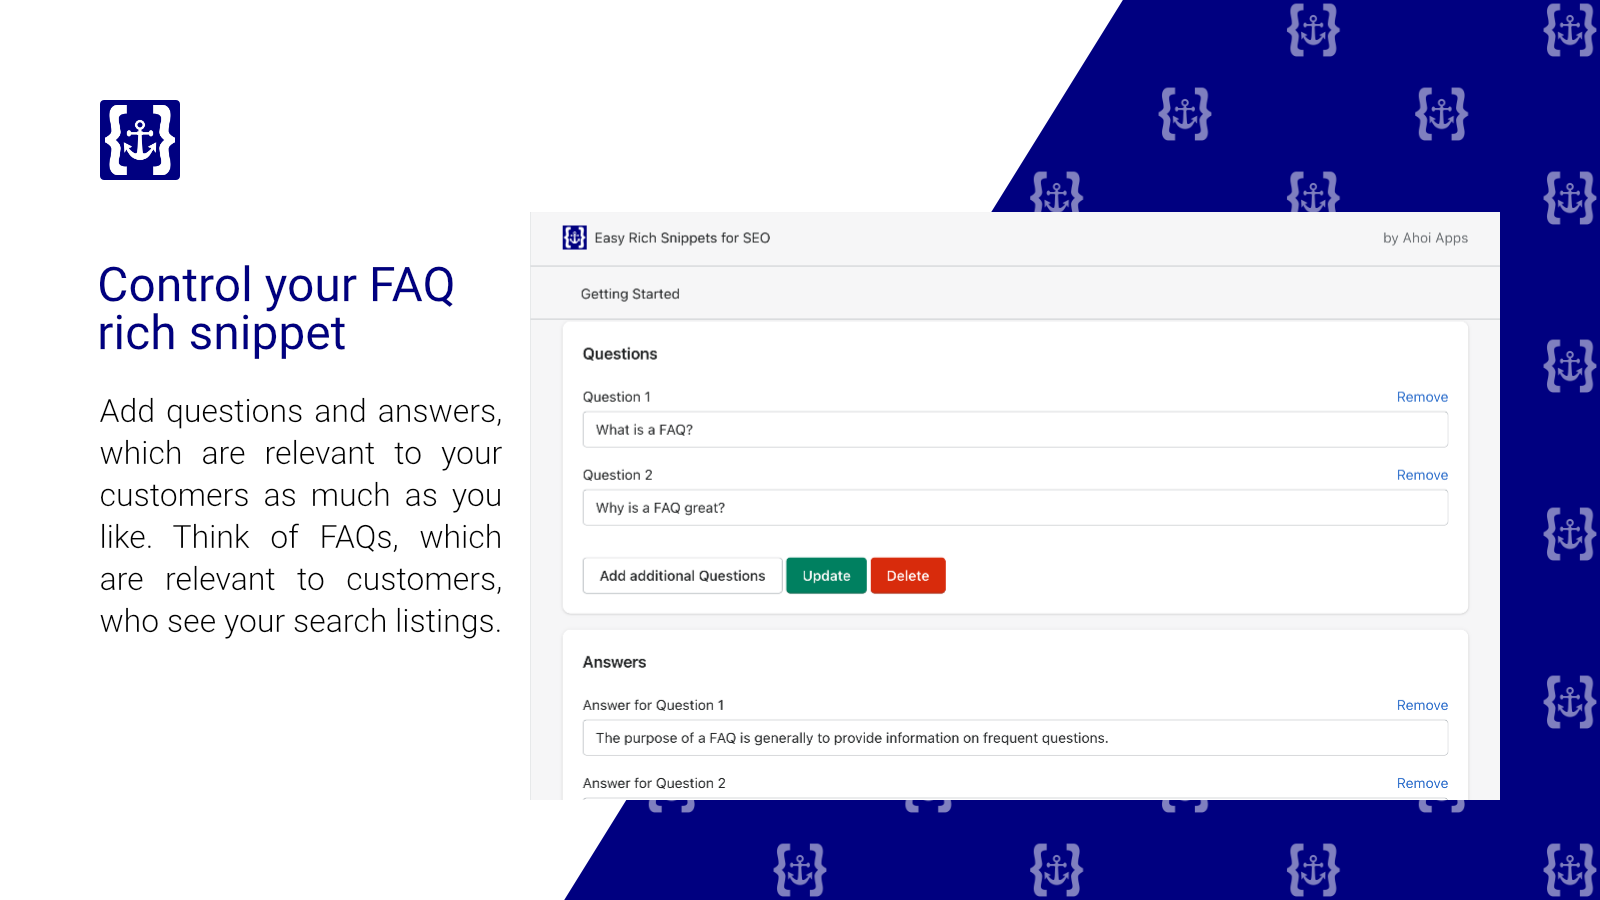 Easy Rich Snippet FAQ Details. Kontrollieren Sie Ihre FAQ-Suchauflistungen.